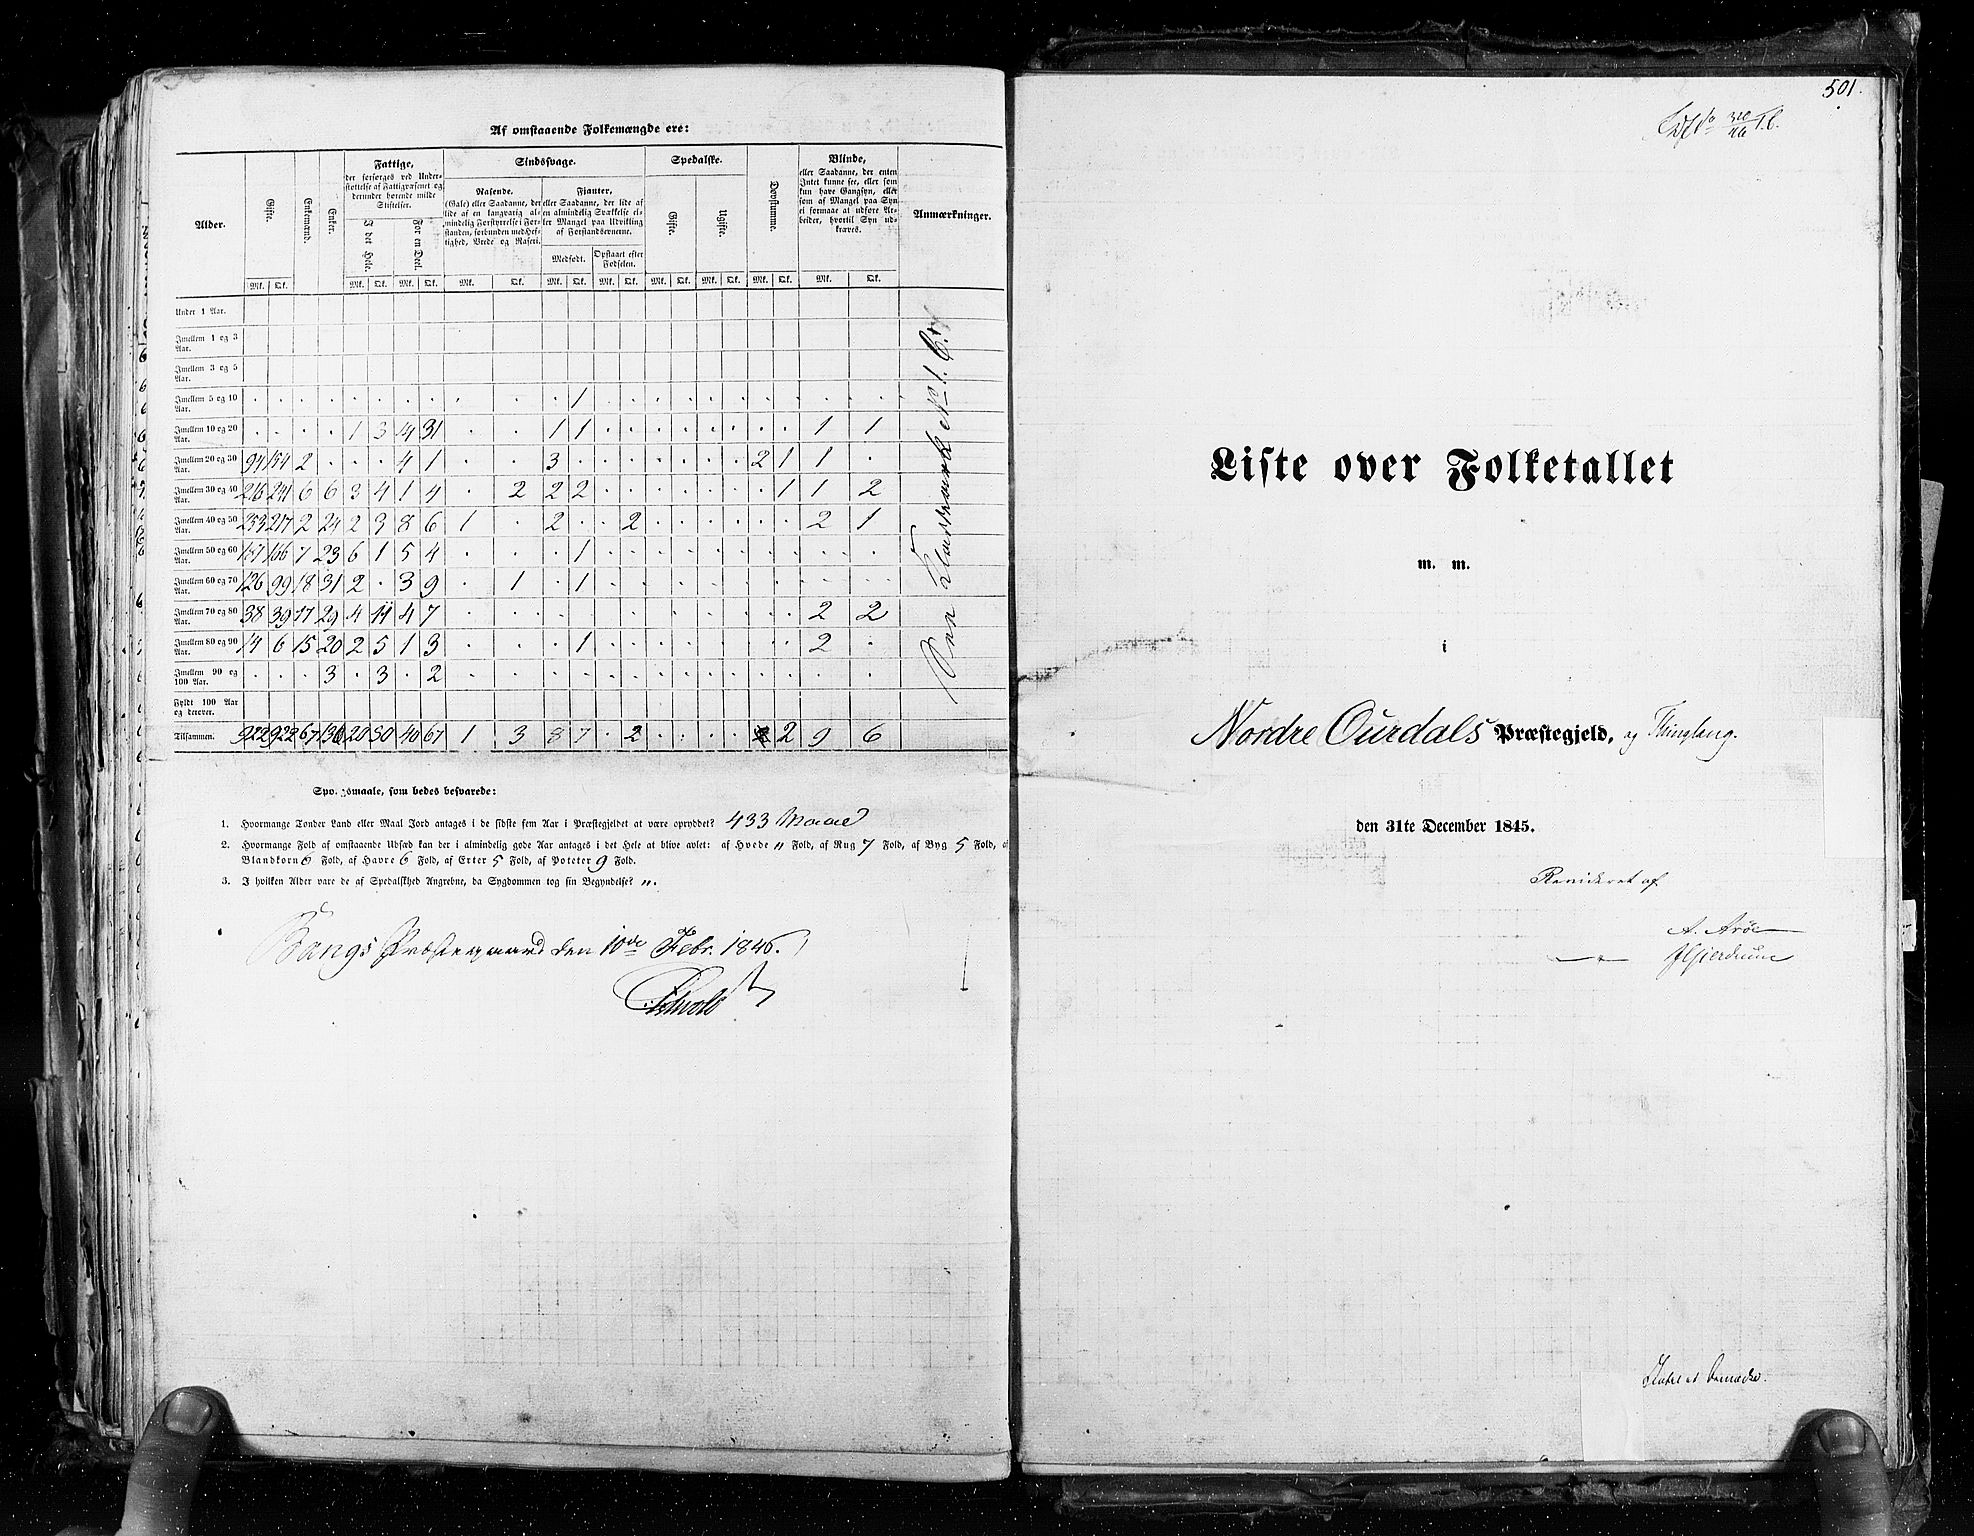 RA, Folketellingen 1845, bind 3: Hedemarken amt og Kristians amt, 1845, s. 501